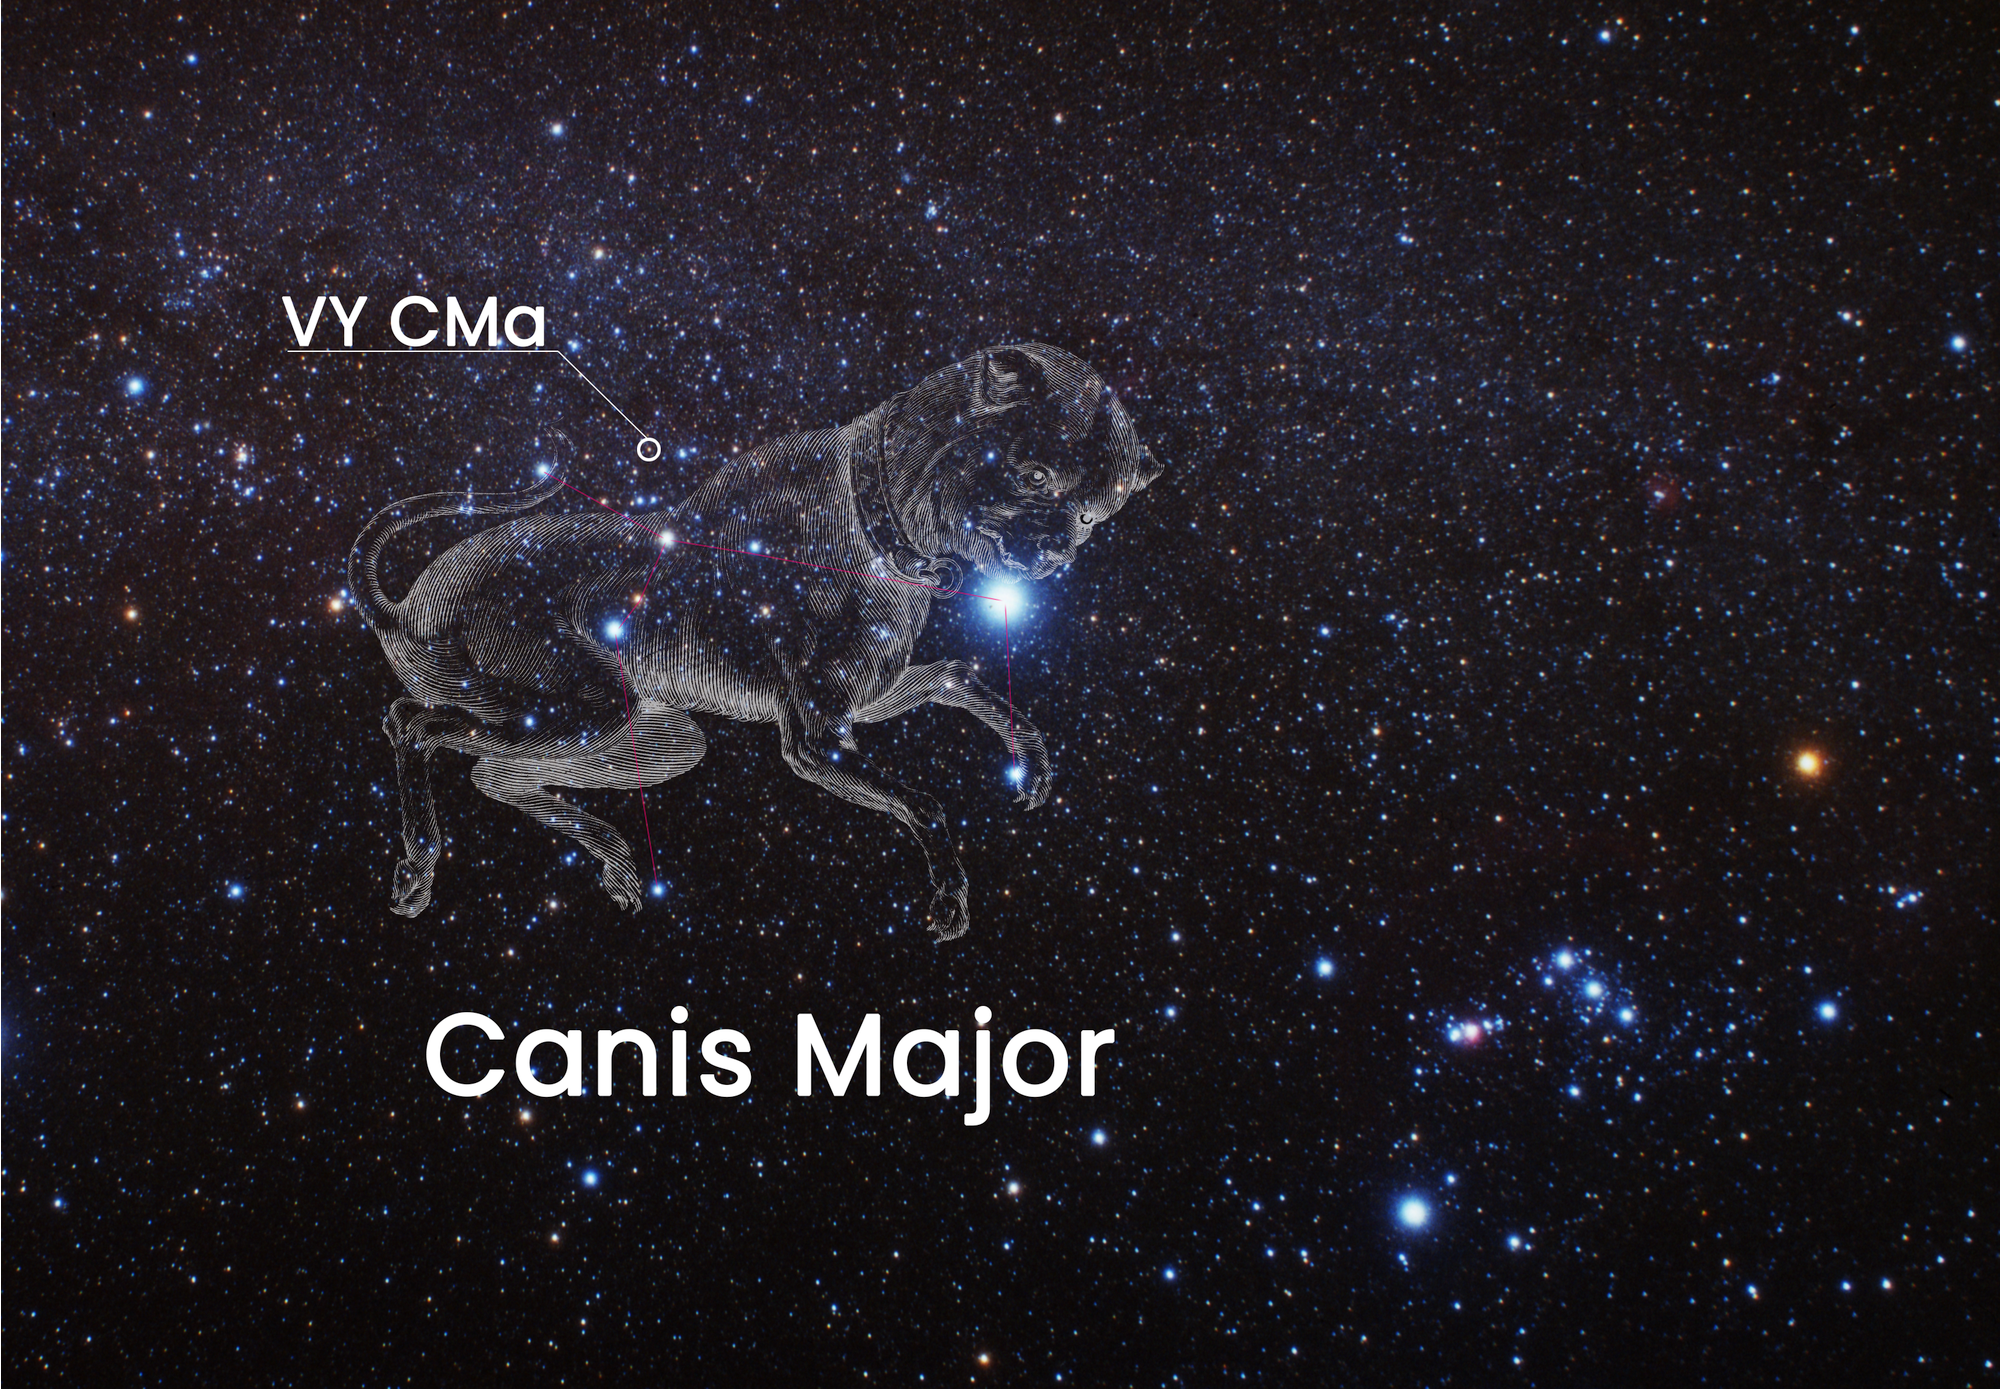 Położenie czerwonego hiperolbrzyma VY Canis Majoris na  niebie. Najlepiej widać go zimą nisko nad południowym horyzontem w gwiazdozbiorze Wielkiego Psa (łac. Canis Major) - powyżej grzbietu. Źródło: NASA, ESA, and J. DePasquale (STScI) Acknowledgment: A. Fujii